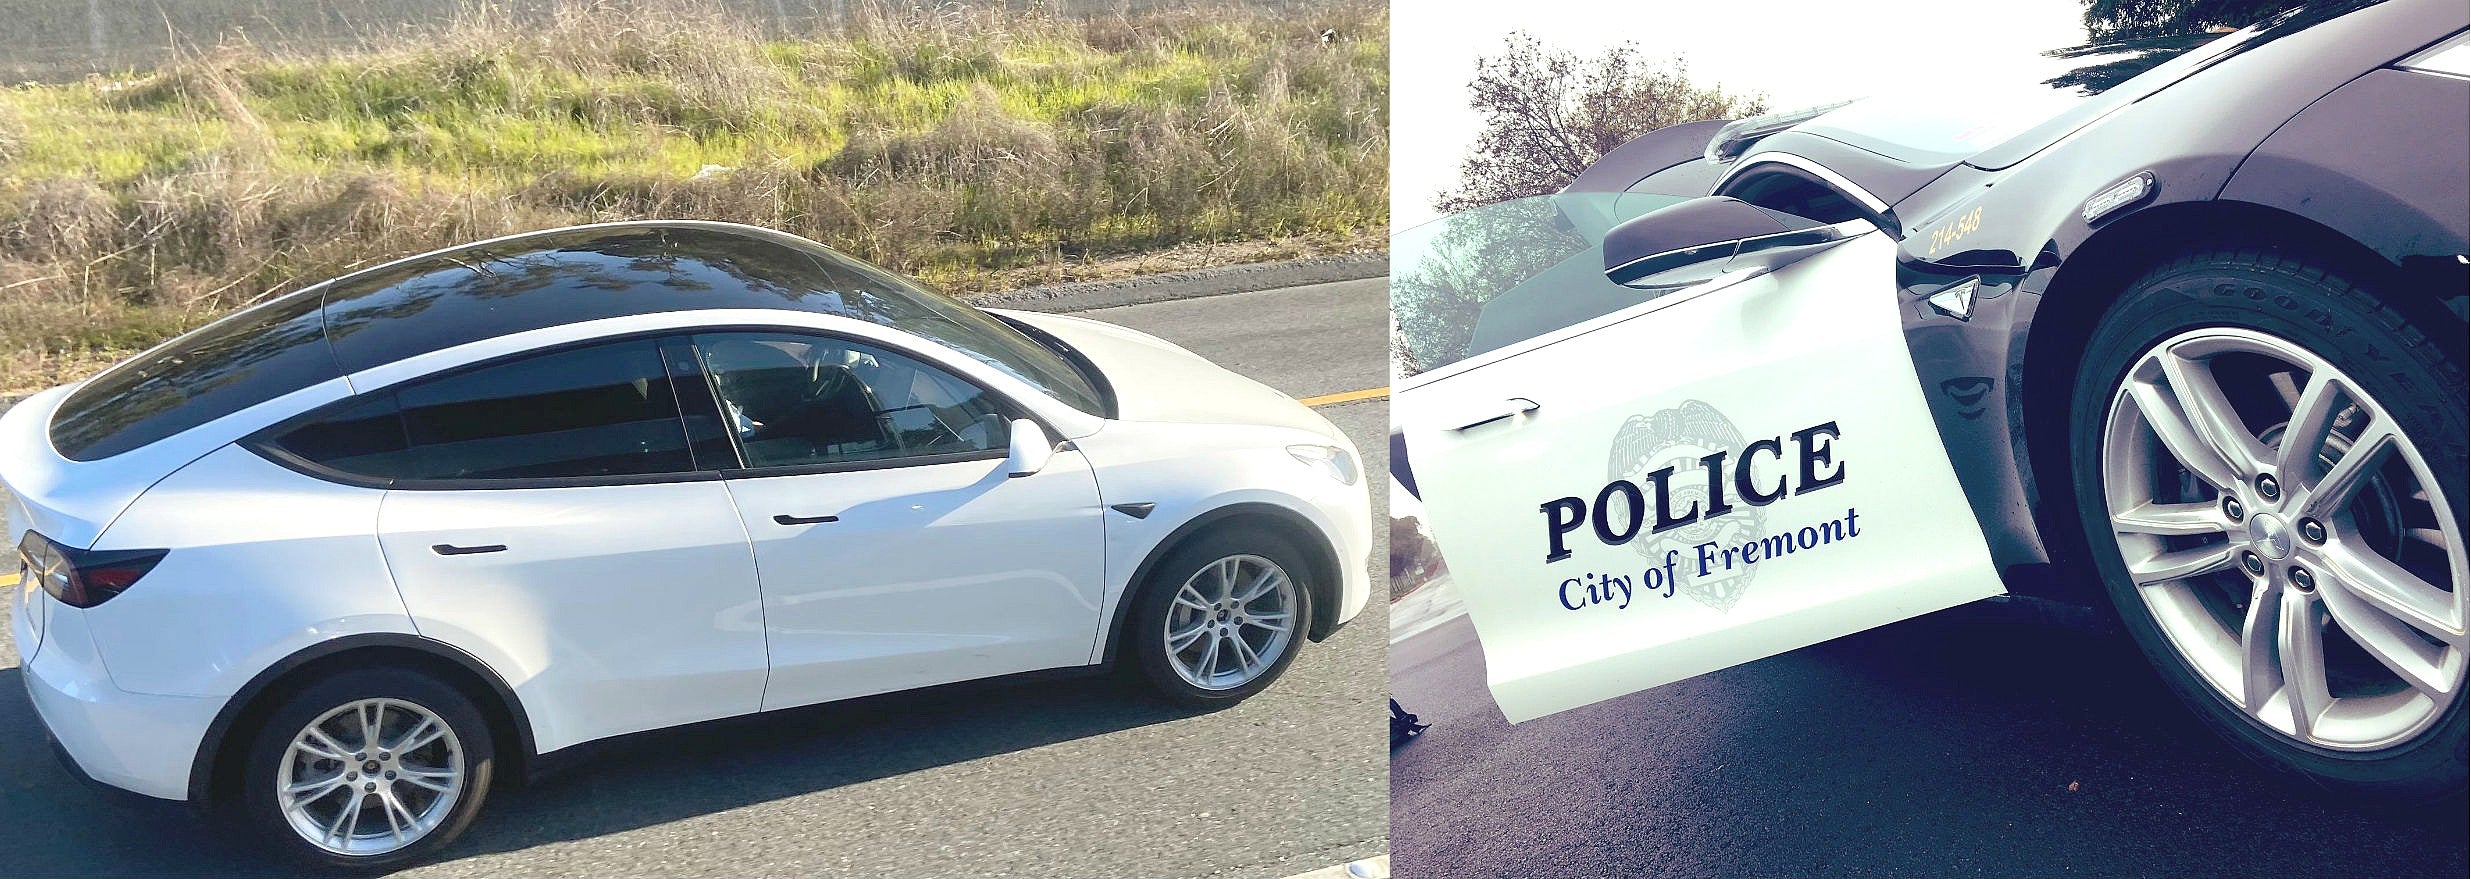 Tesla-Model-Y-Fremont-Police-Department